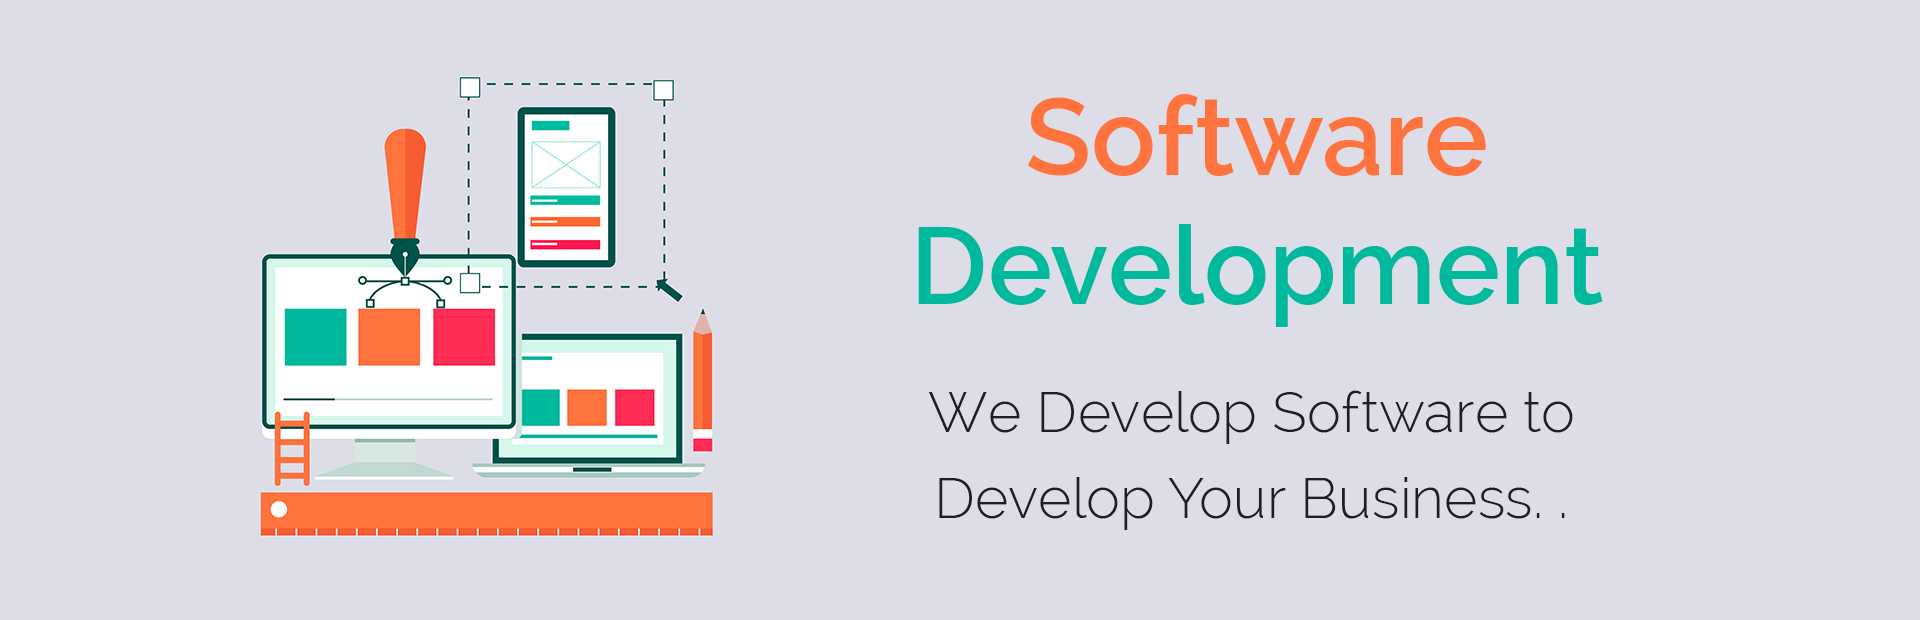 Software Development in Bhagalpur, Bihar